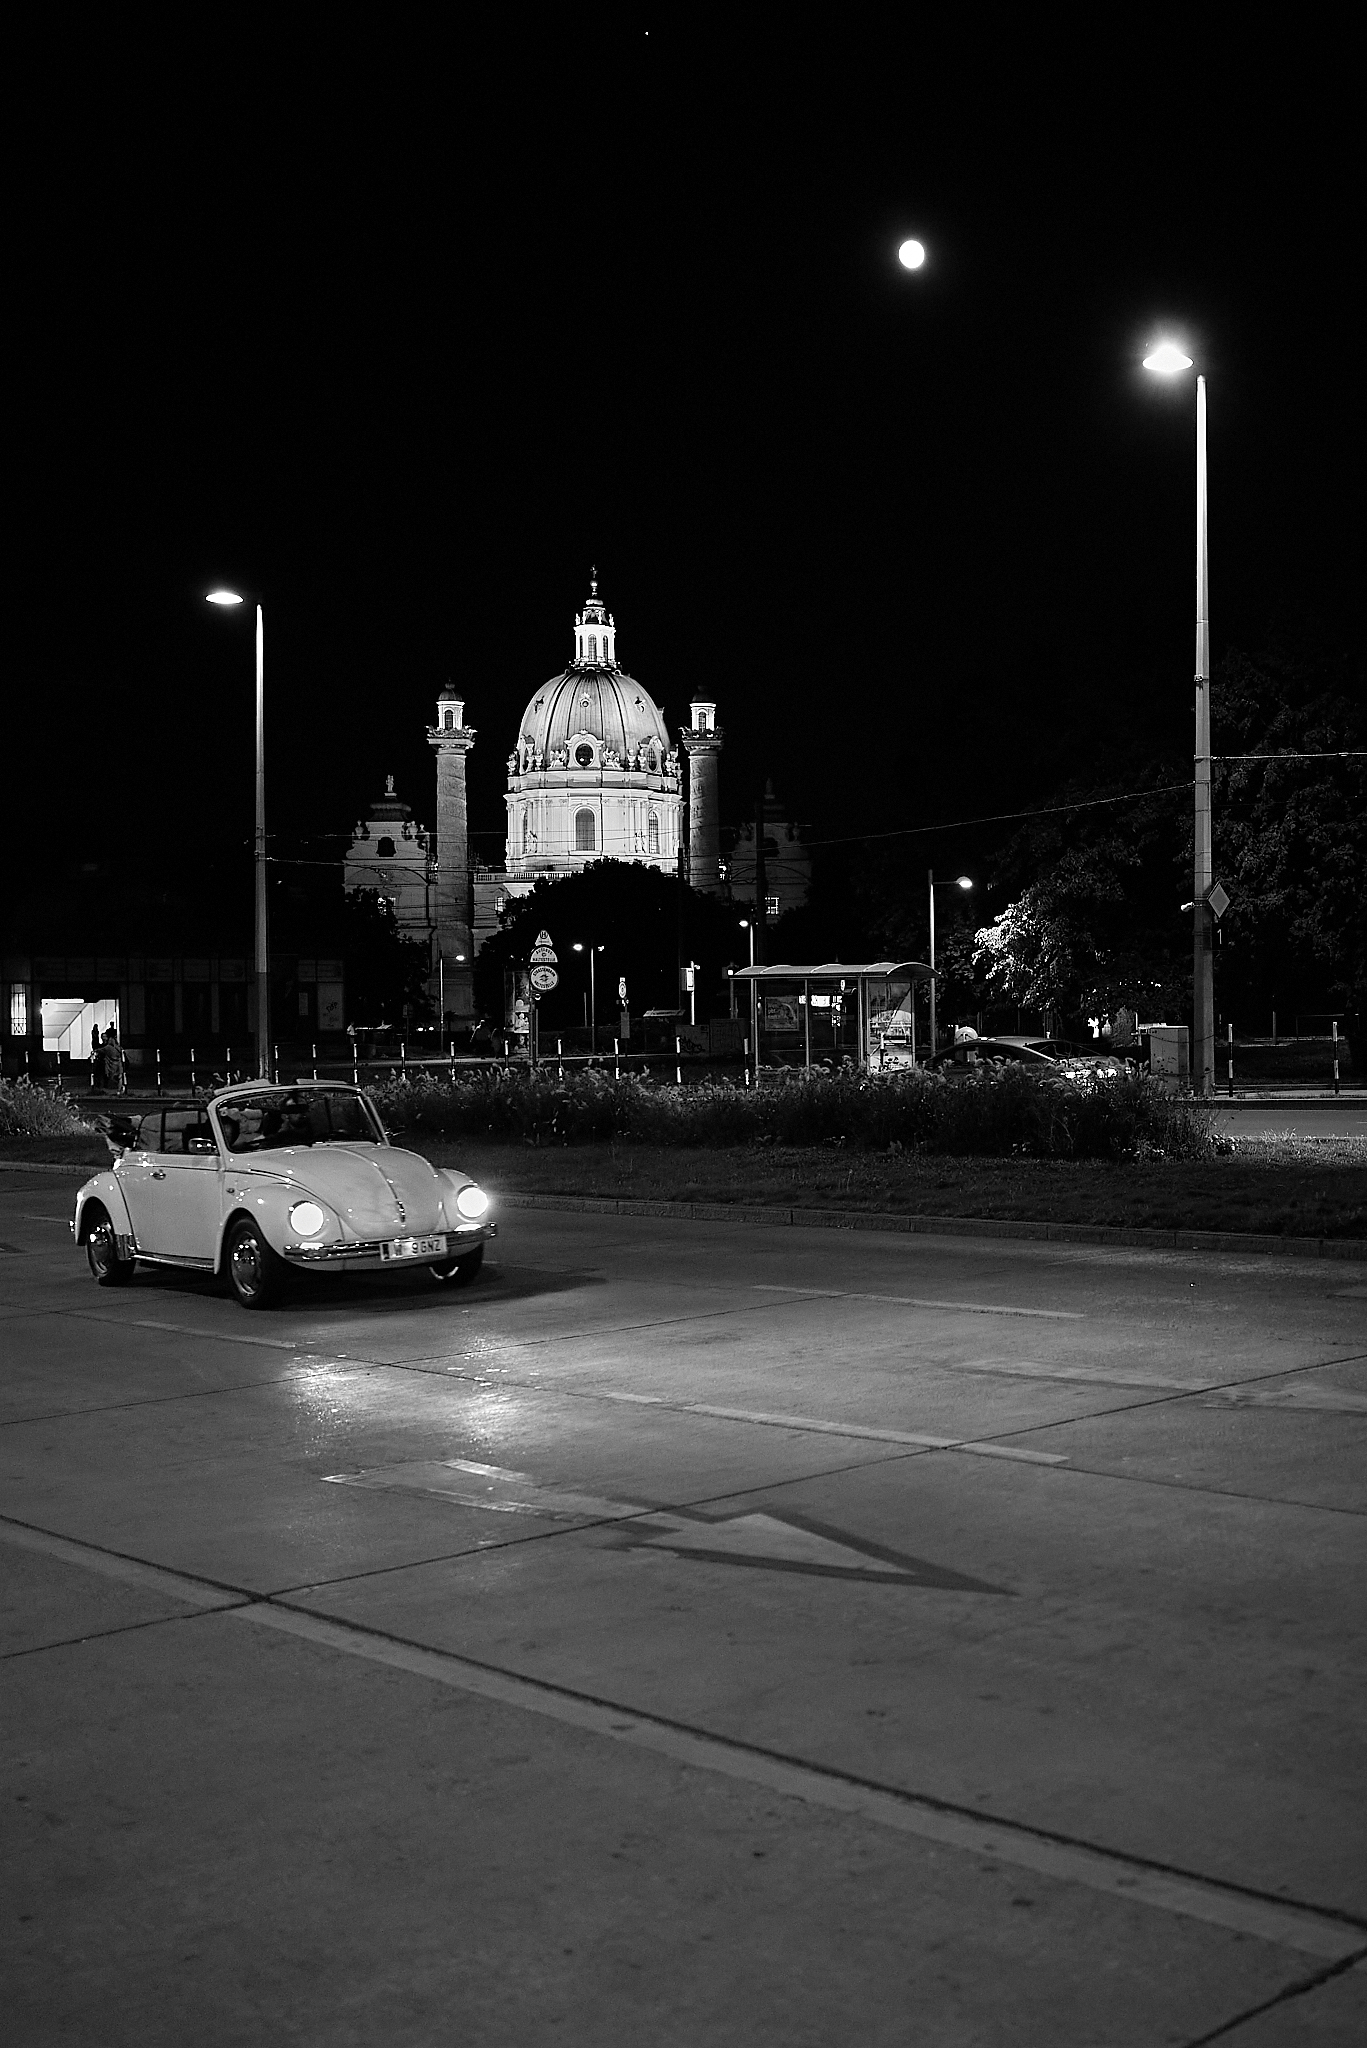 VW Beetle, Karlskirche, Full Moon, and Jupiter